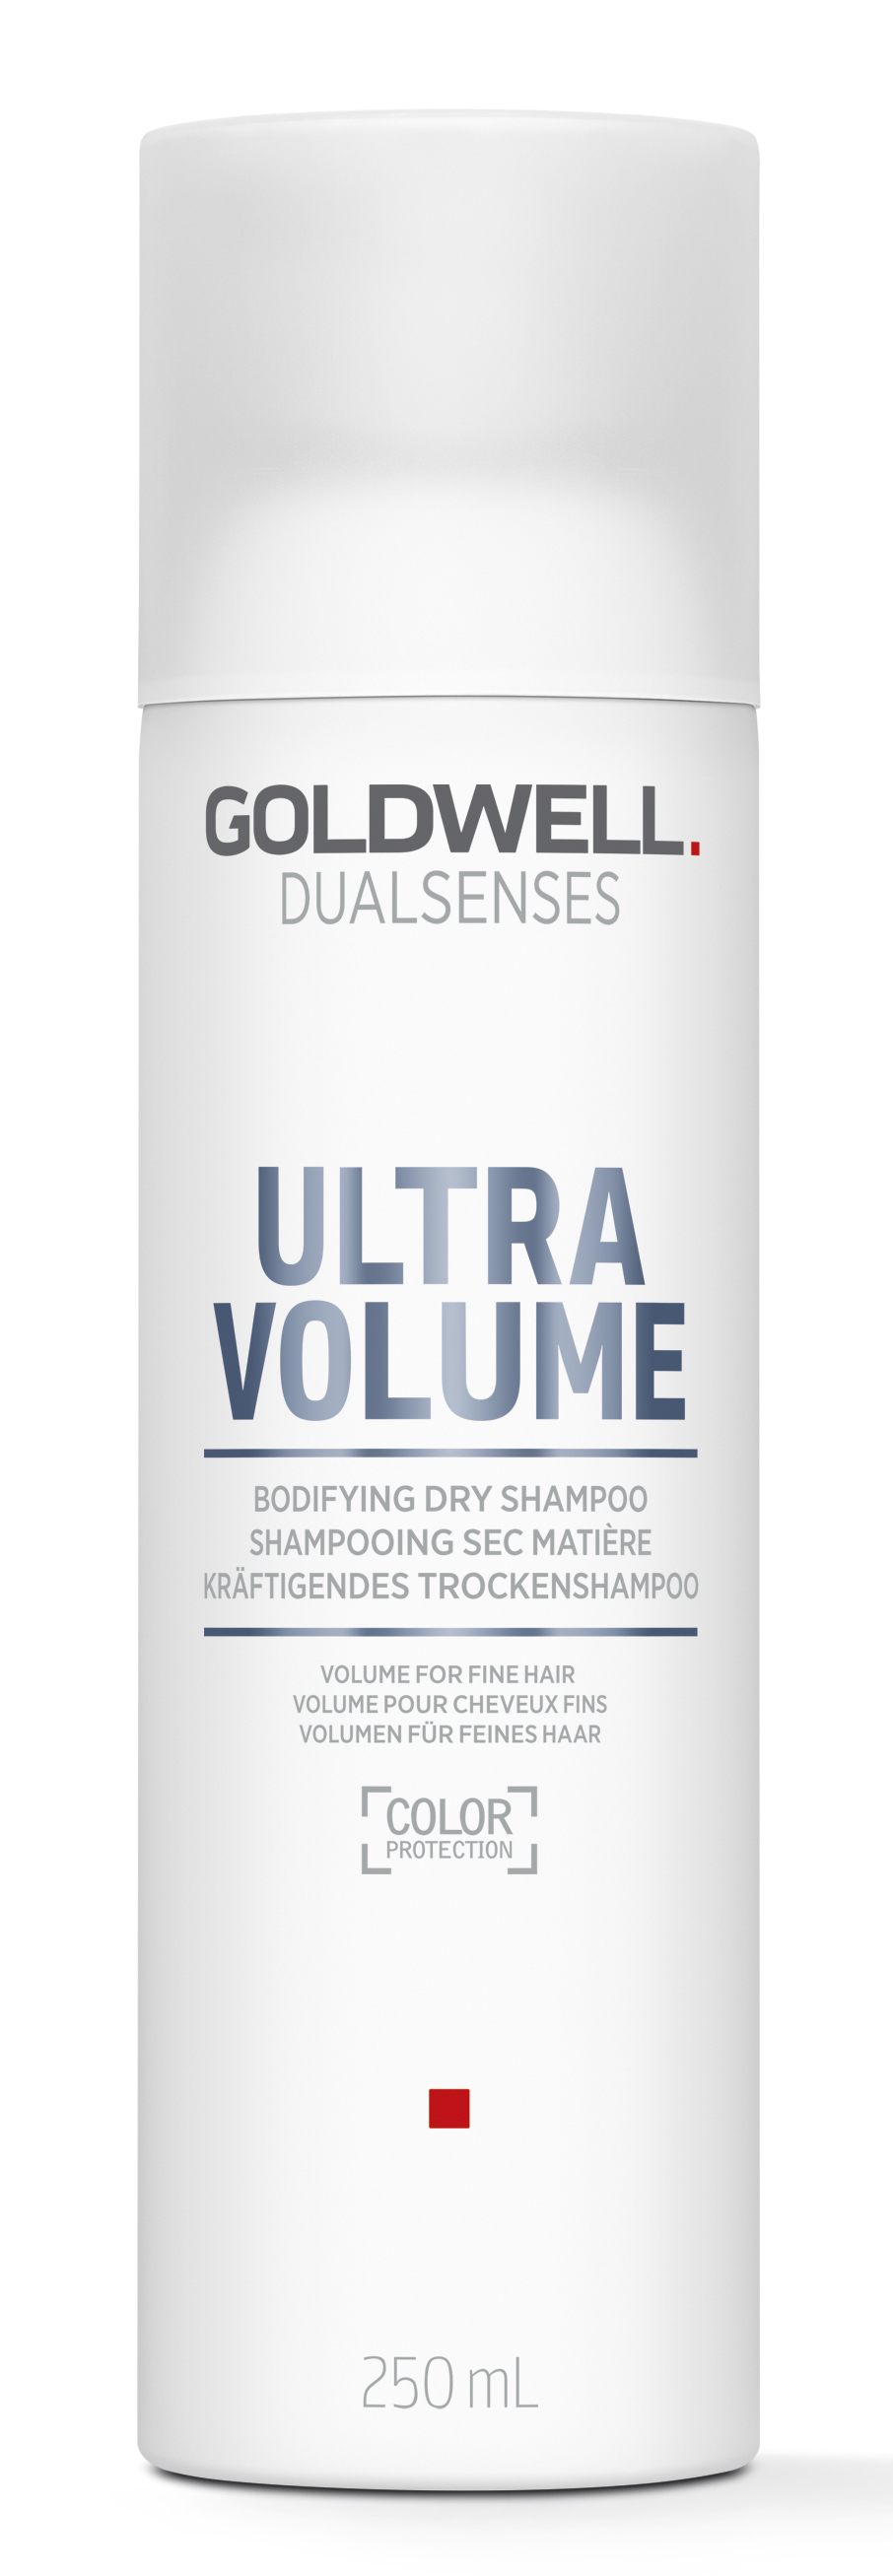 Dual Senses Volume Dry Shampoo 250ml